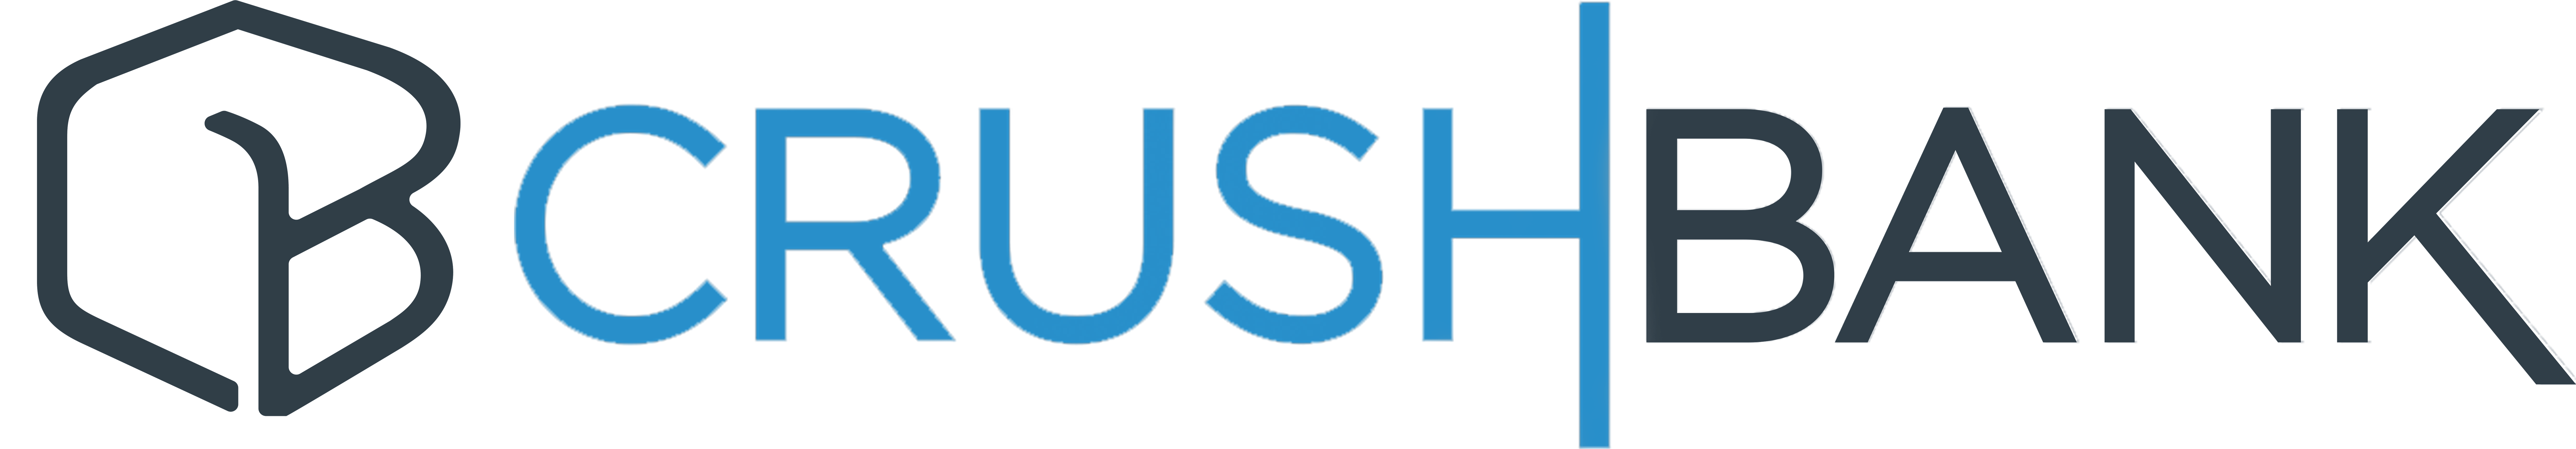 CrushBank Full Logo.jpg